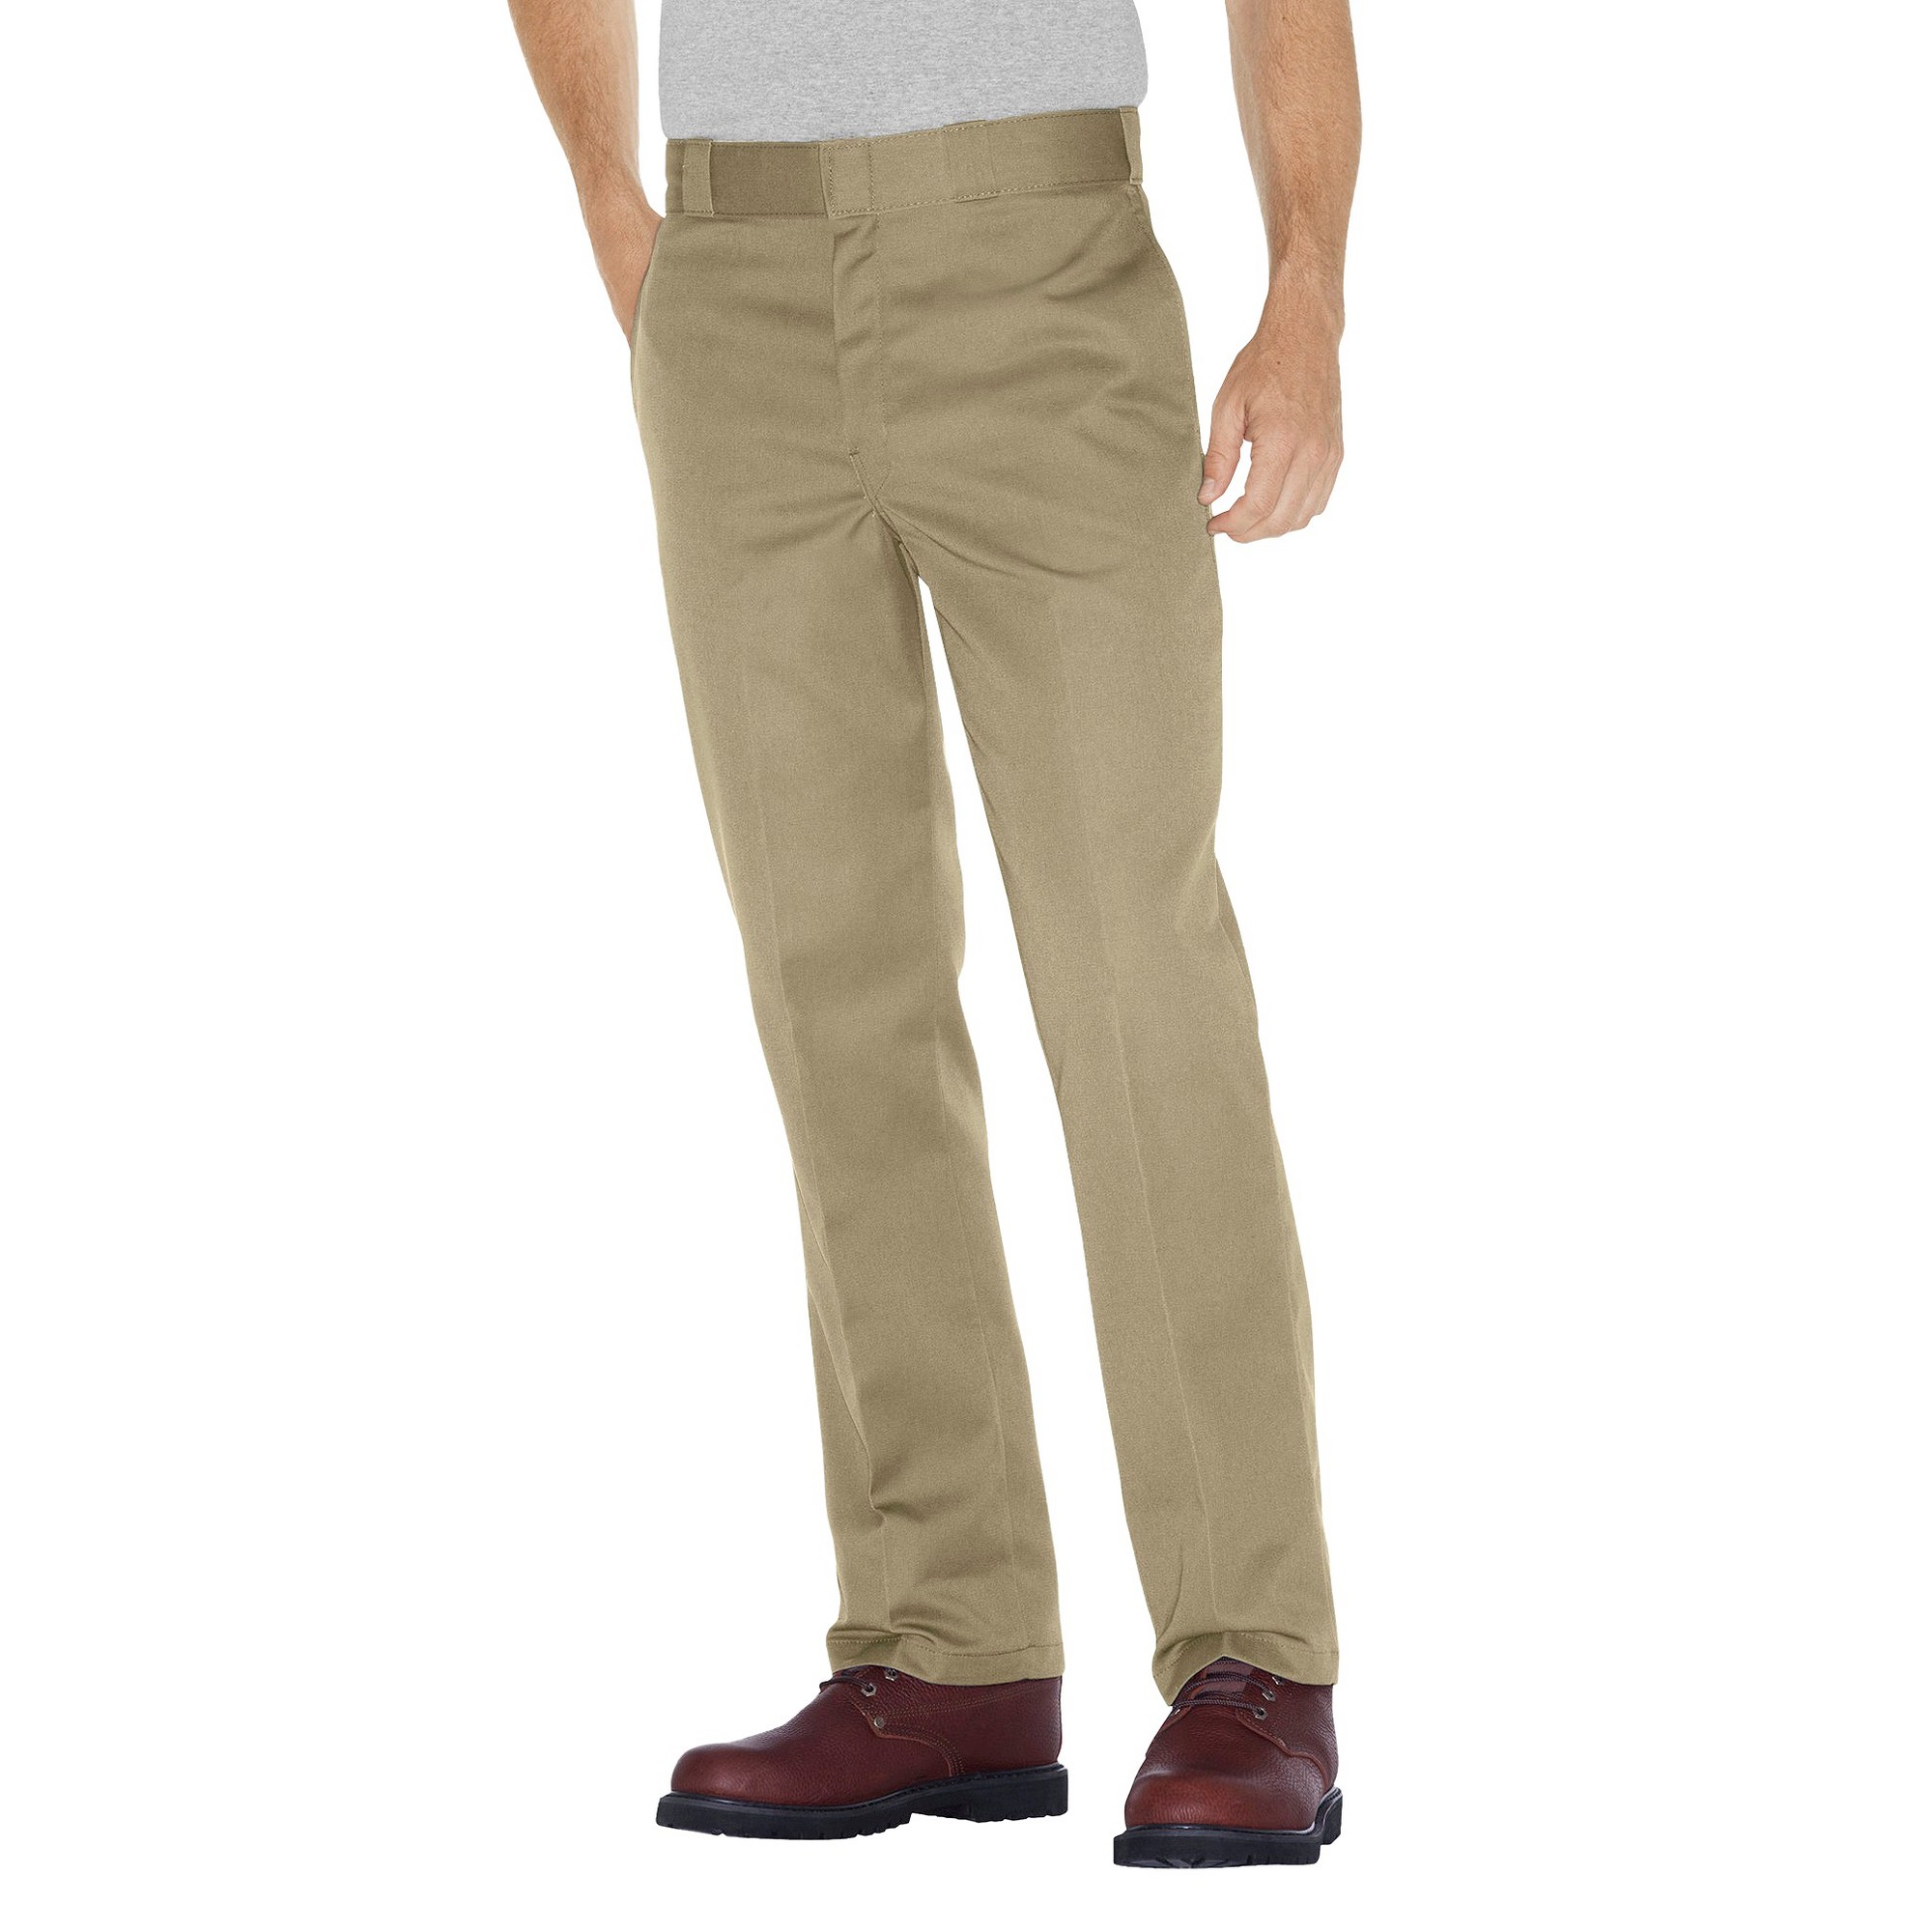 Dickies - Men's Big & Tall Original Fit 874 Twill Pants Khaki 44x31, Green